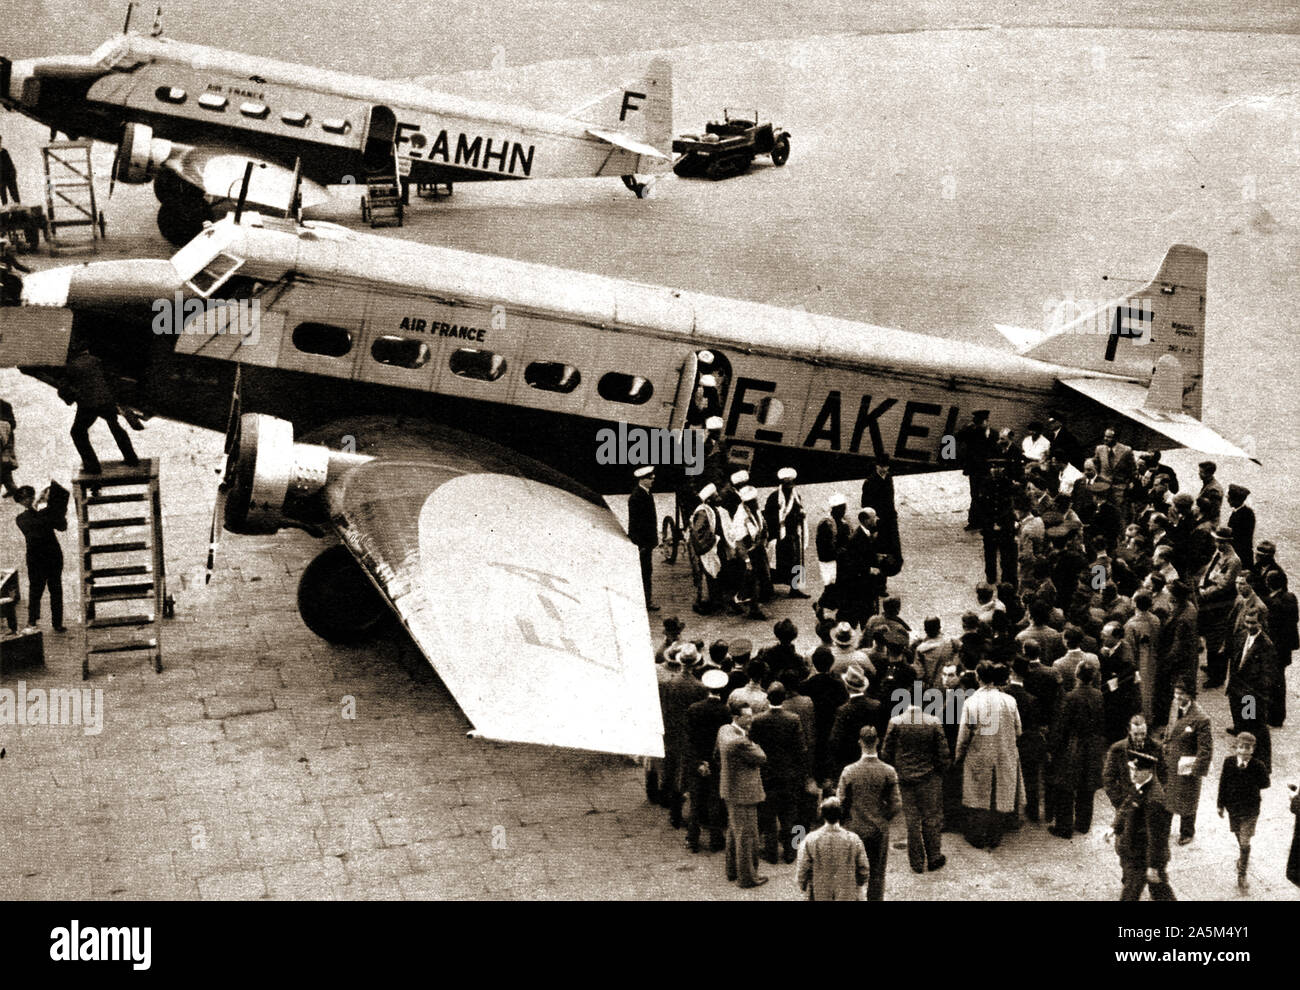 1937 Foto während der Krönung von König George VI. von Großbritannien übernommen. Royal Guest Seif al-Islam Hussein von Jemen in Croydon Airport Aussteigen aus einem Air France Flugzeug Stockfoto